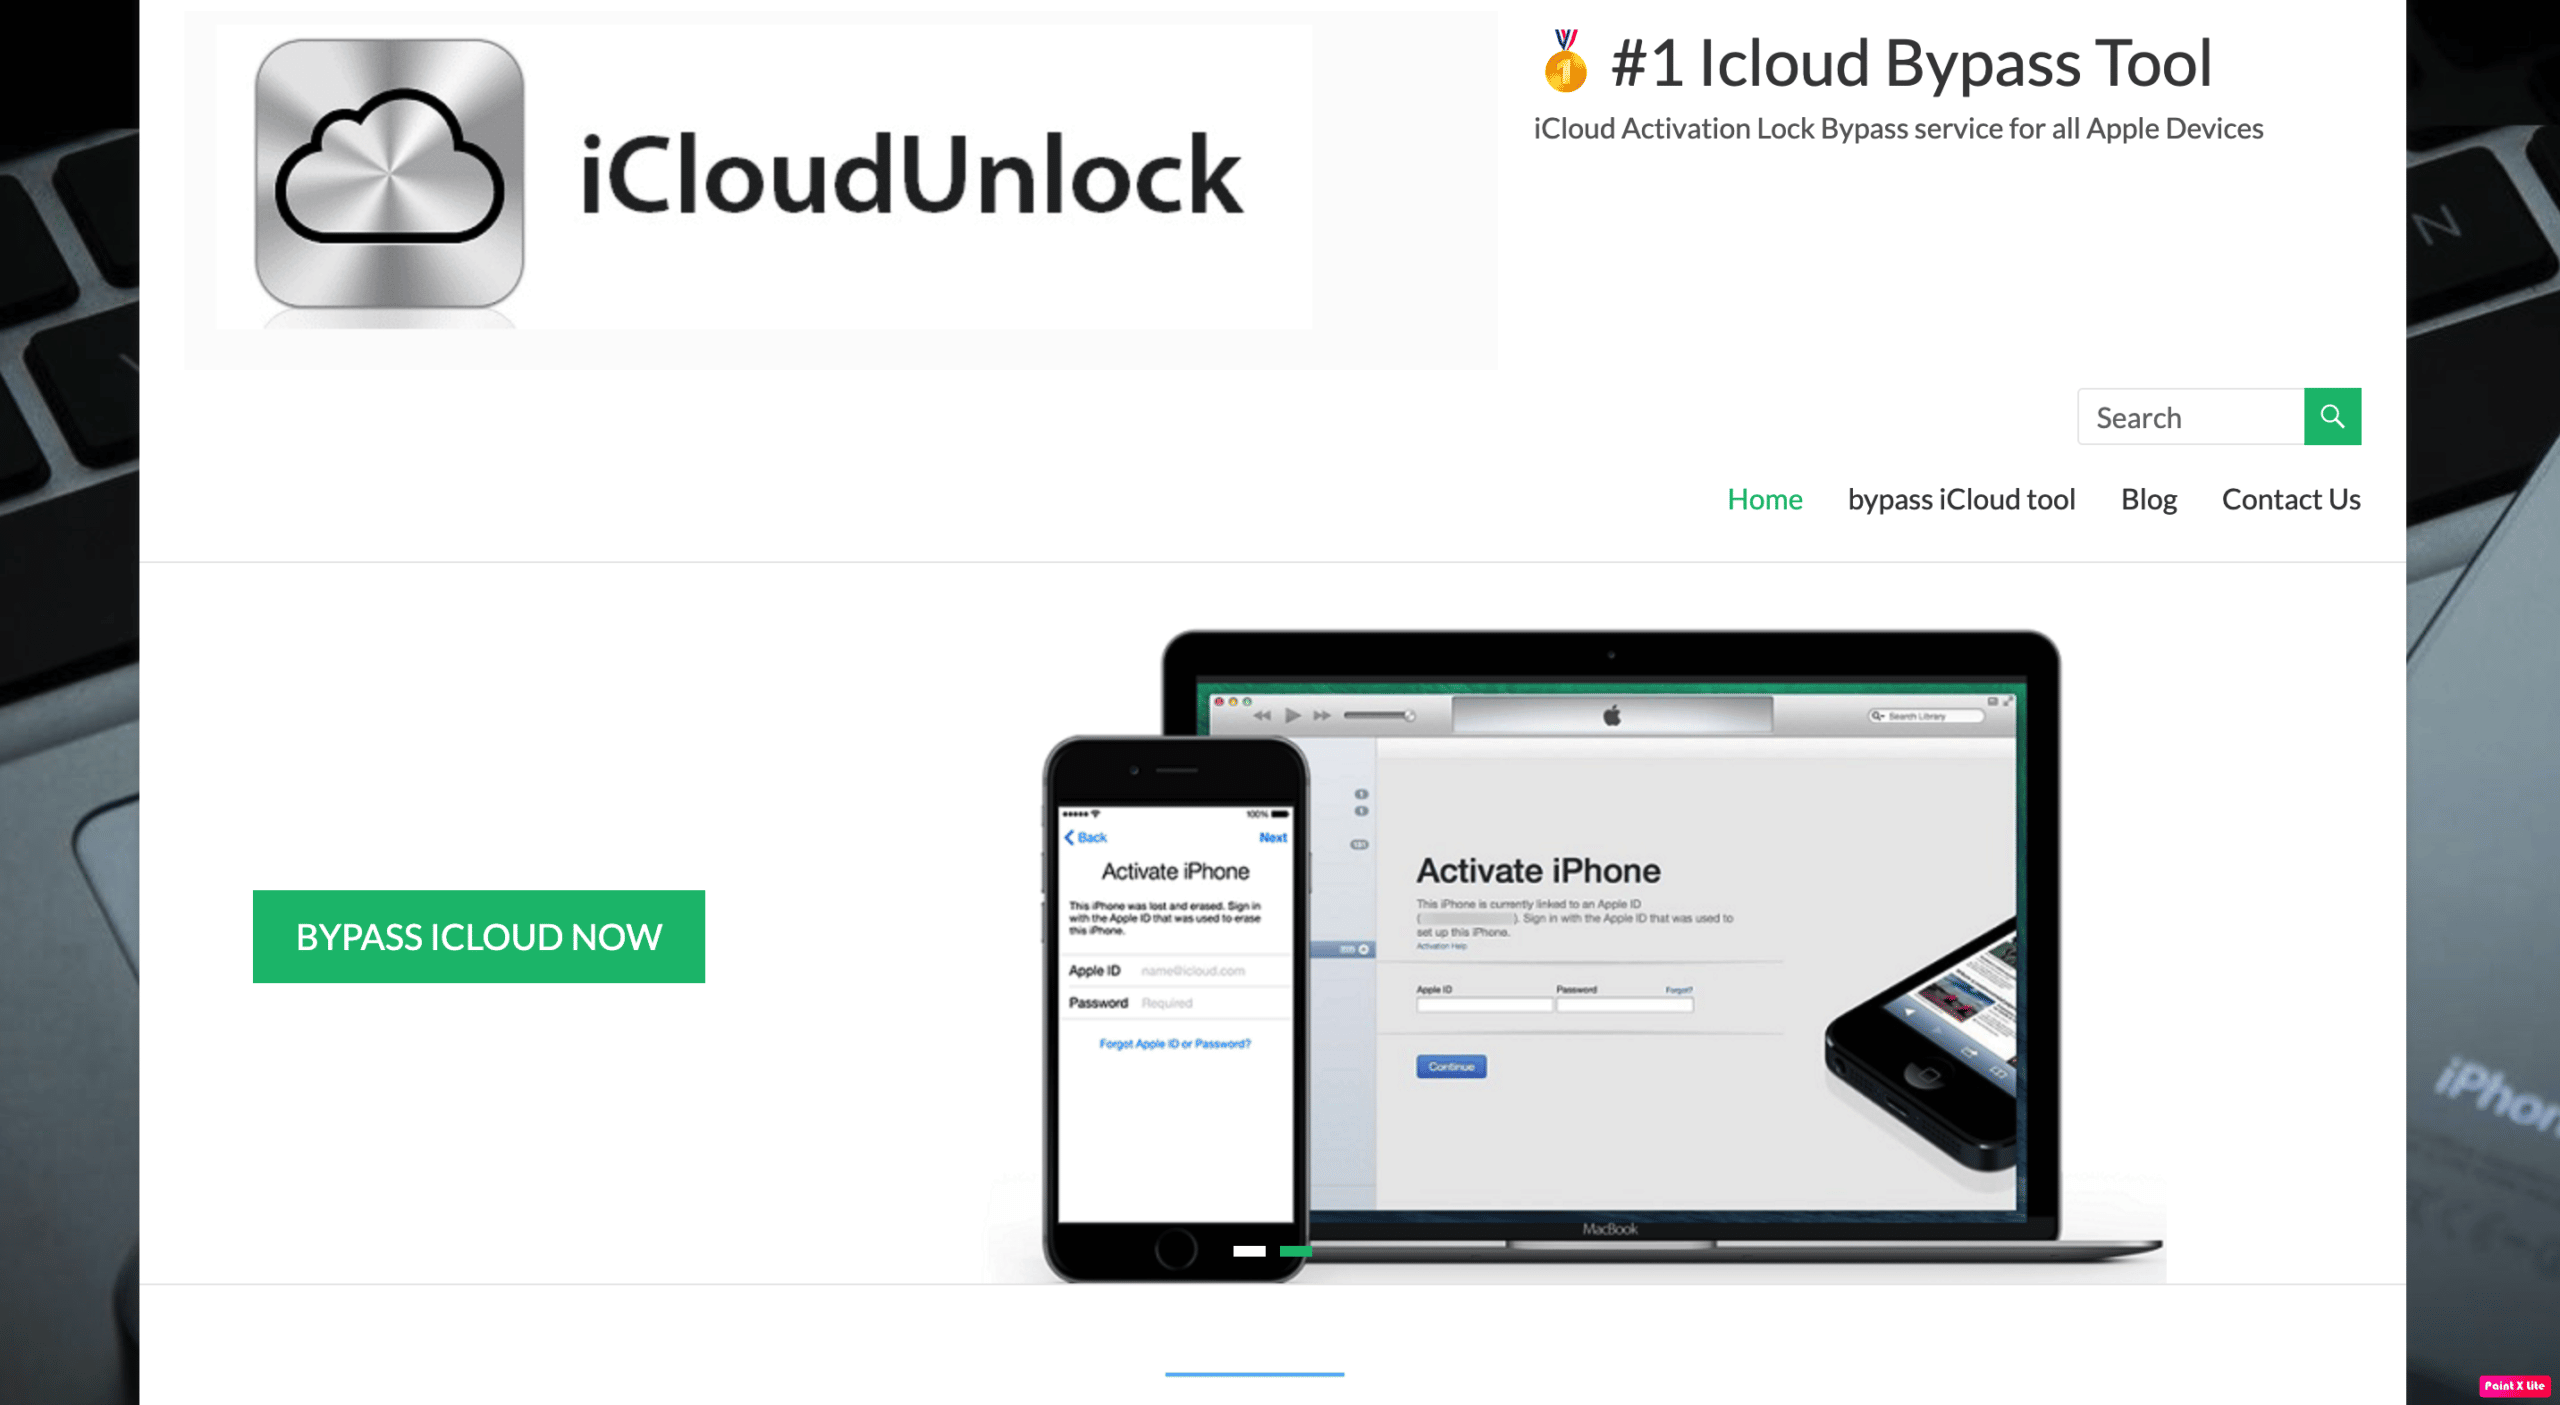 icloud unlock homepage. Top 15 Best iCloud Unlock Bypass Tools